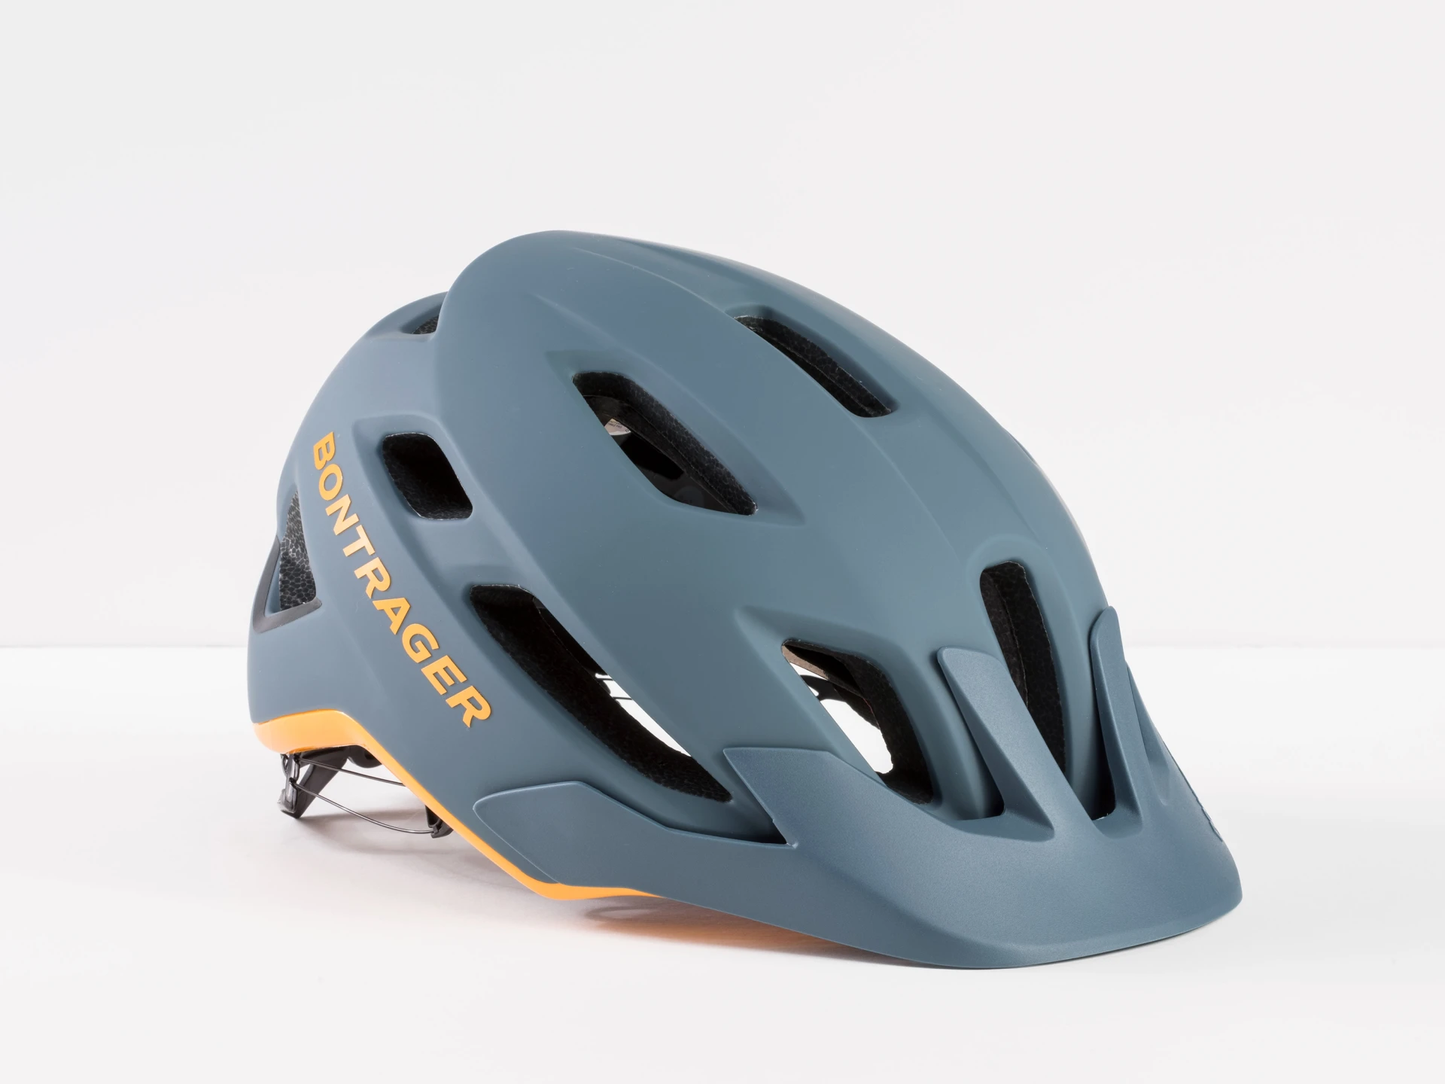 Bontrager Quantum Mips 頭盔 / Bontrager Quantum Mips Bike Helmet